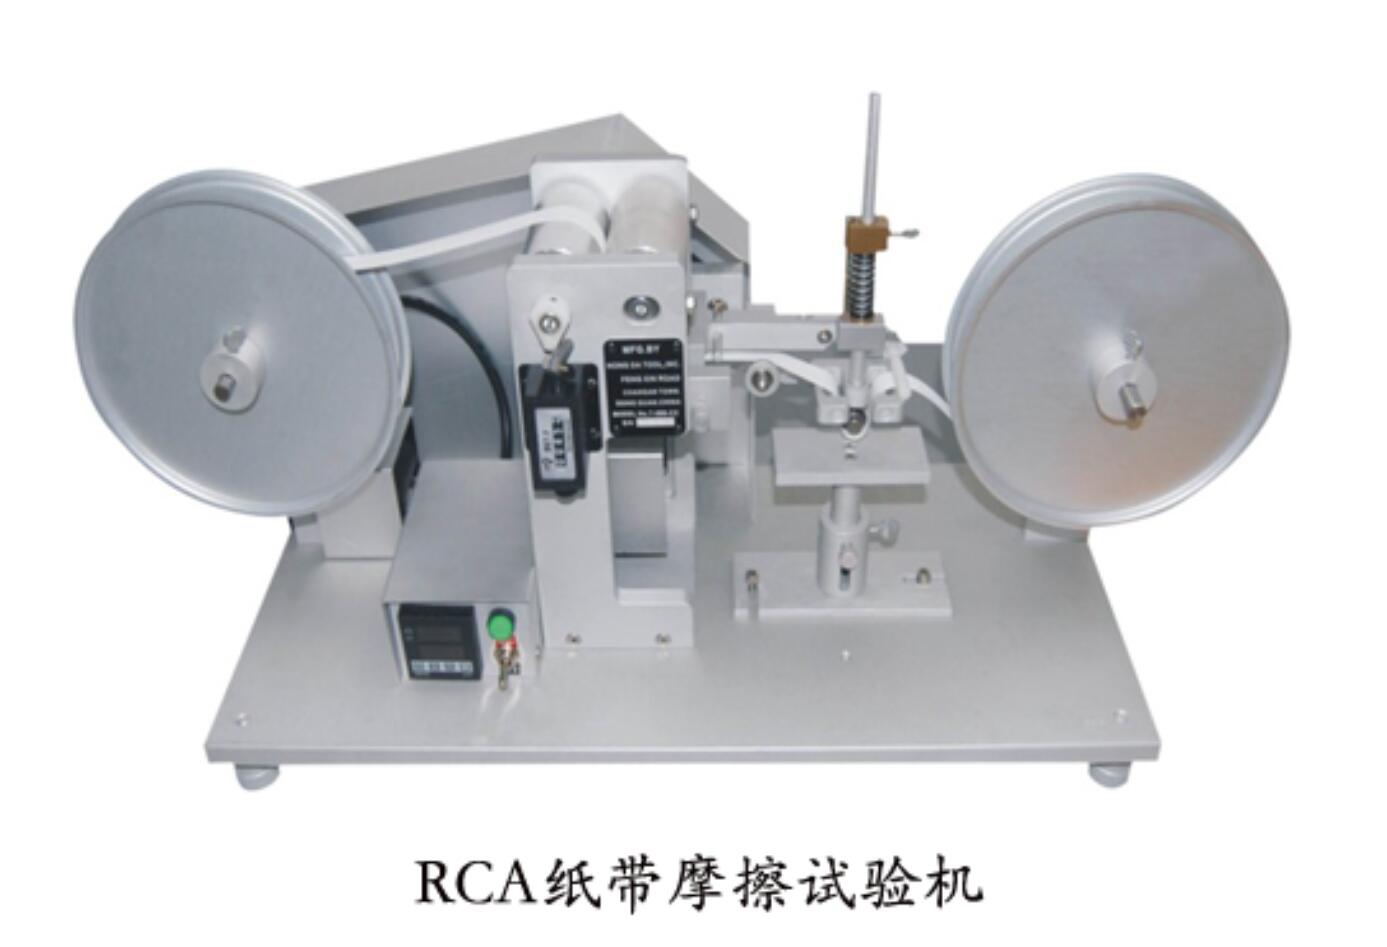 RCA纸带耐磨擦试验机